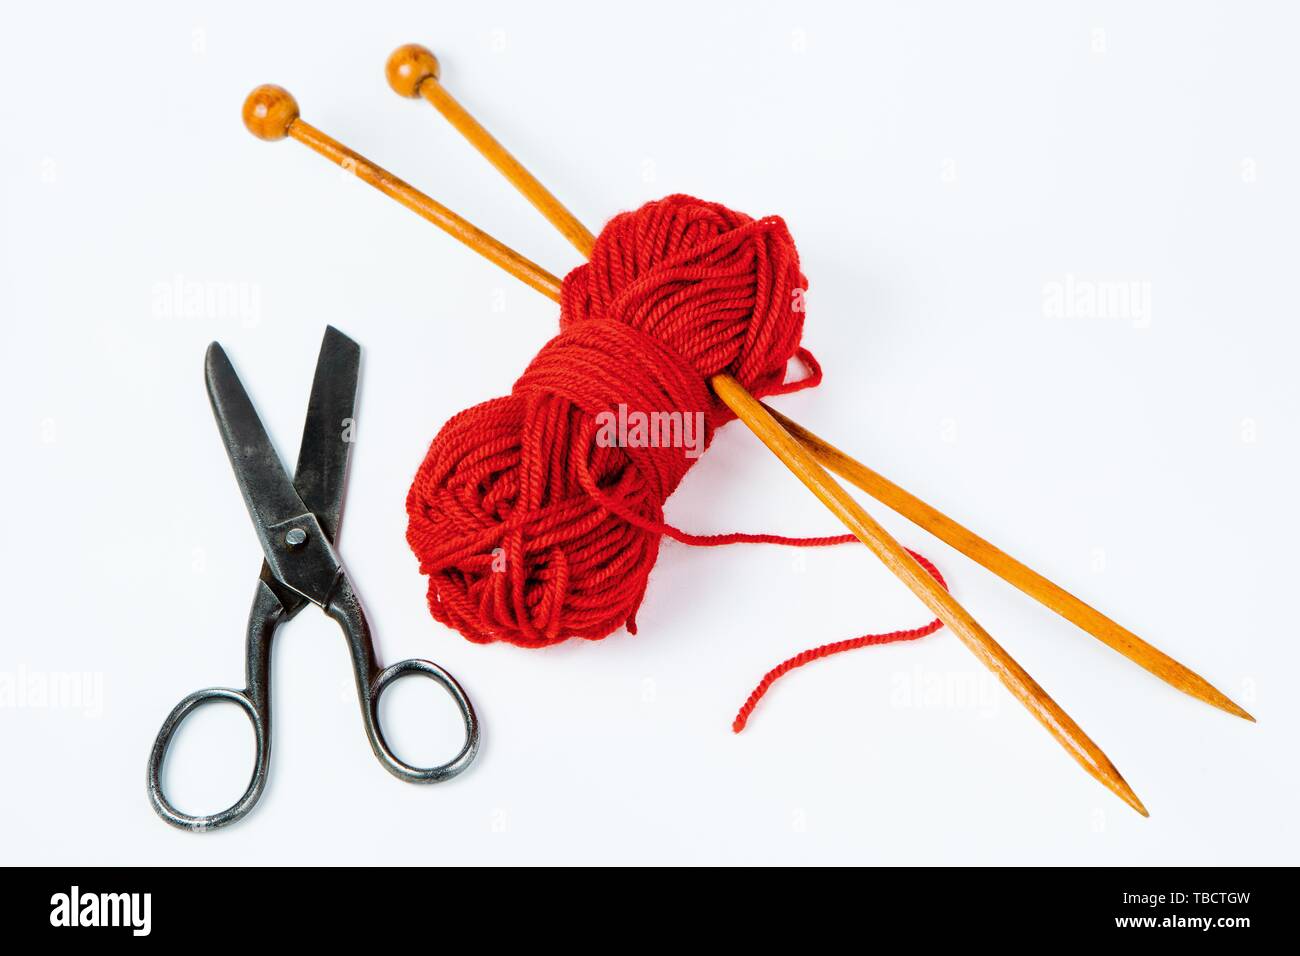 Paire d'aiguilles à tricoter en bois, ciseaux et laine rouge sur fond blanc Banque D'Images